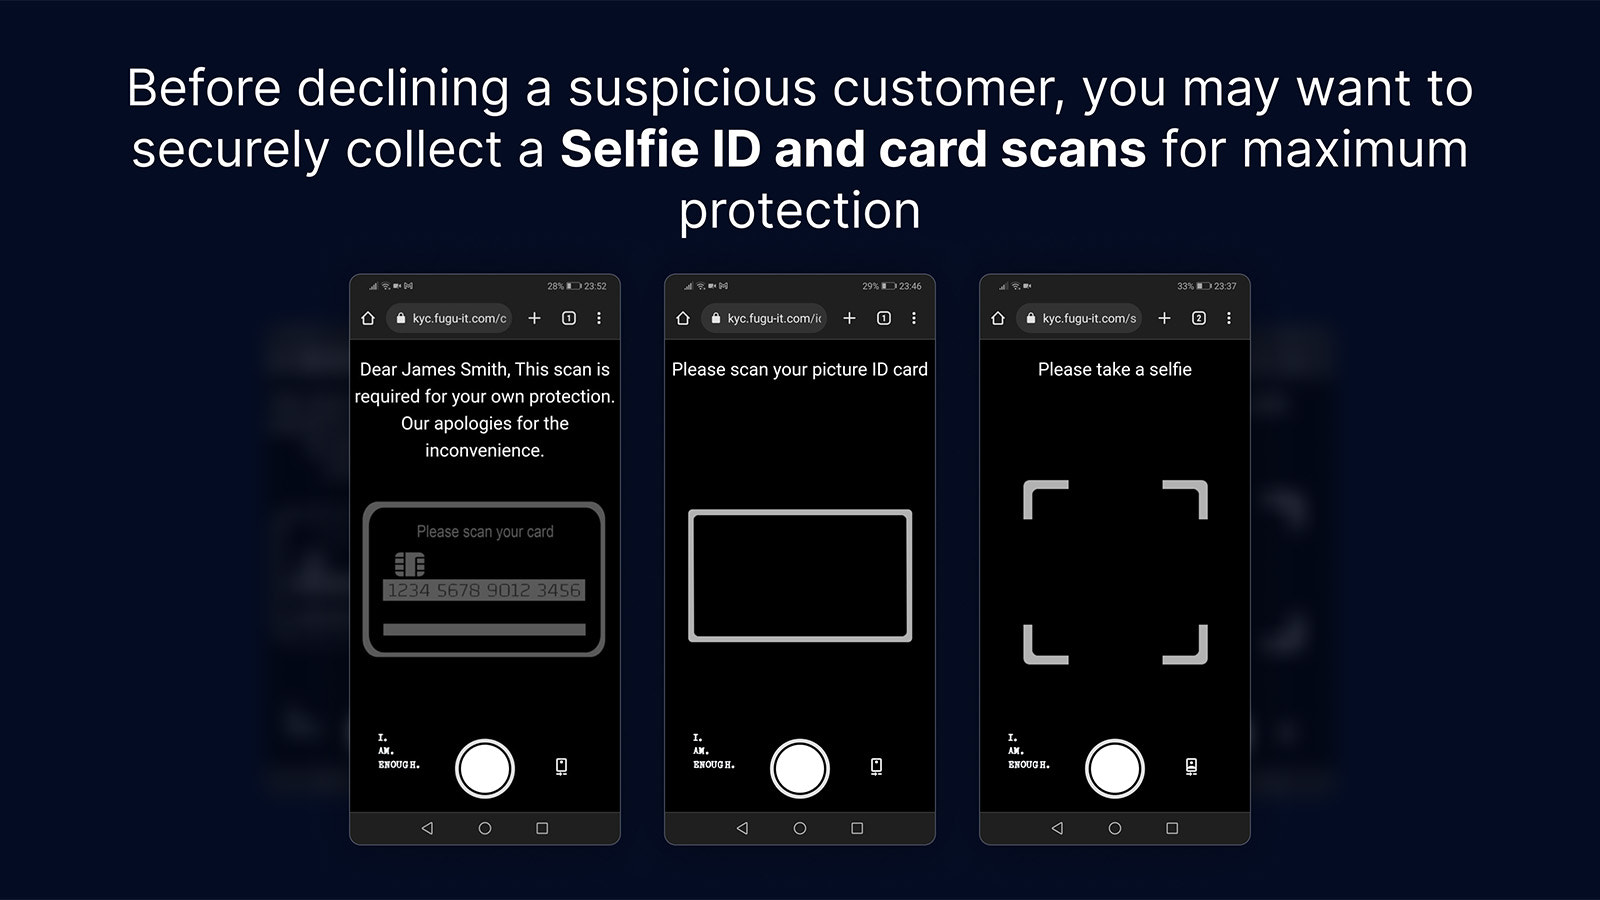 Quando necessário, colete com segurança Selfie ID's e scans de cartão